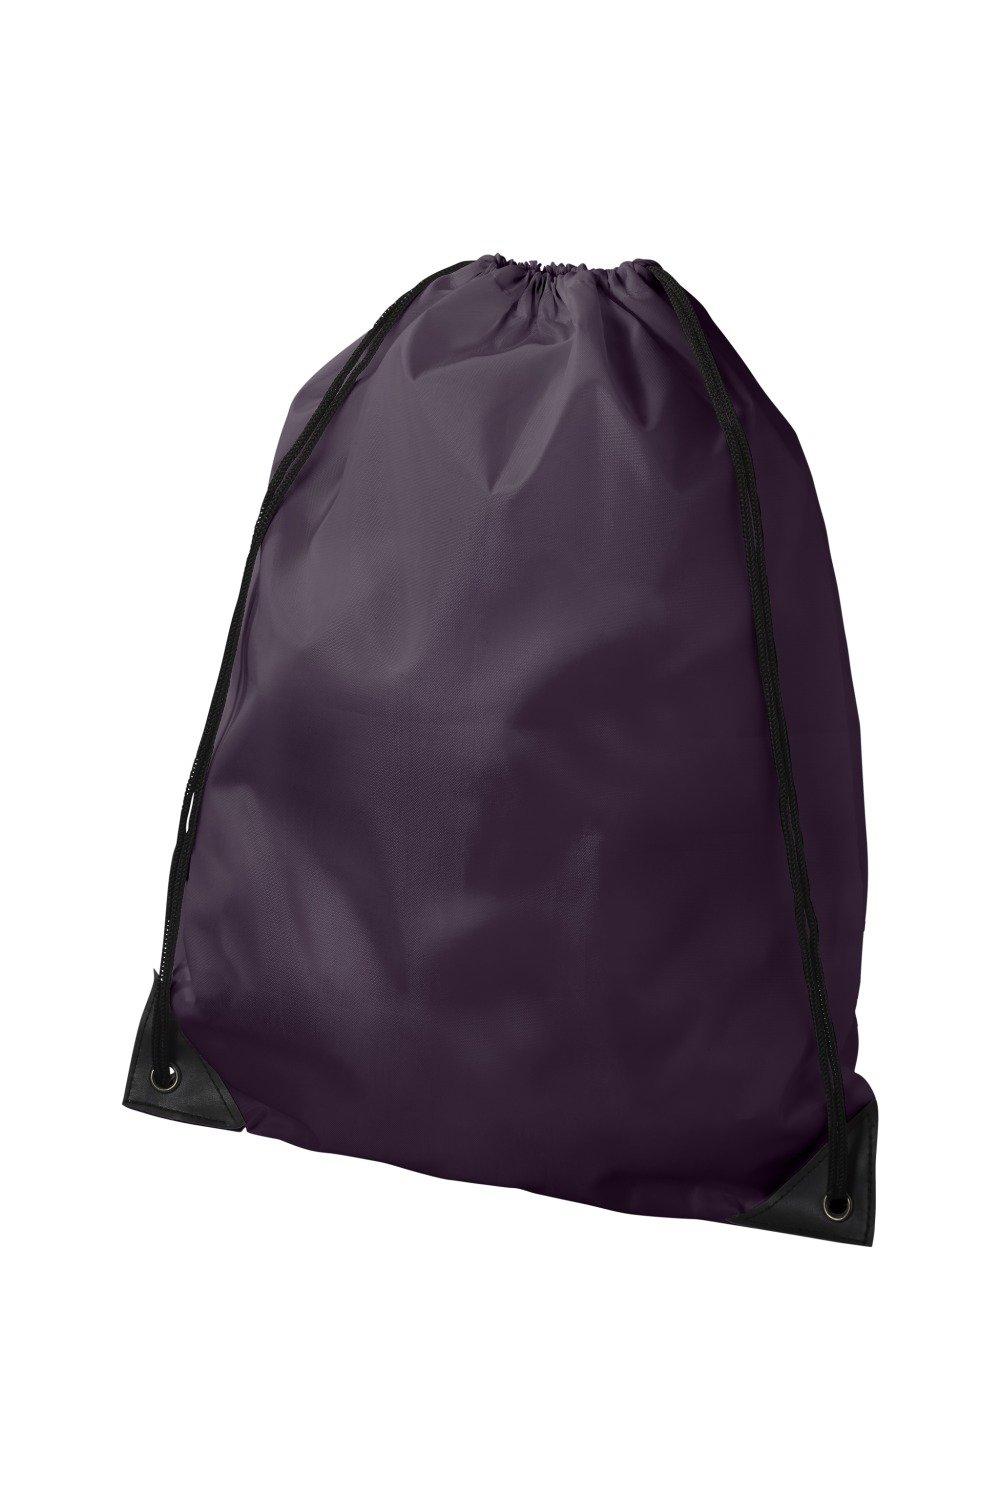 Рюкзак Oriole Премиум Bullet, фиолетовый холщовый рюкзак на шнурке модный школьный рюкзак повседневный рюкзак на шнурке школьный рюкзак для девочек подростков